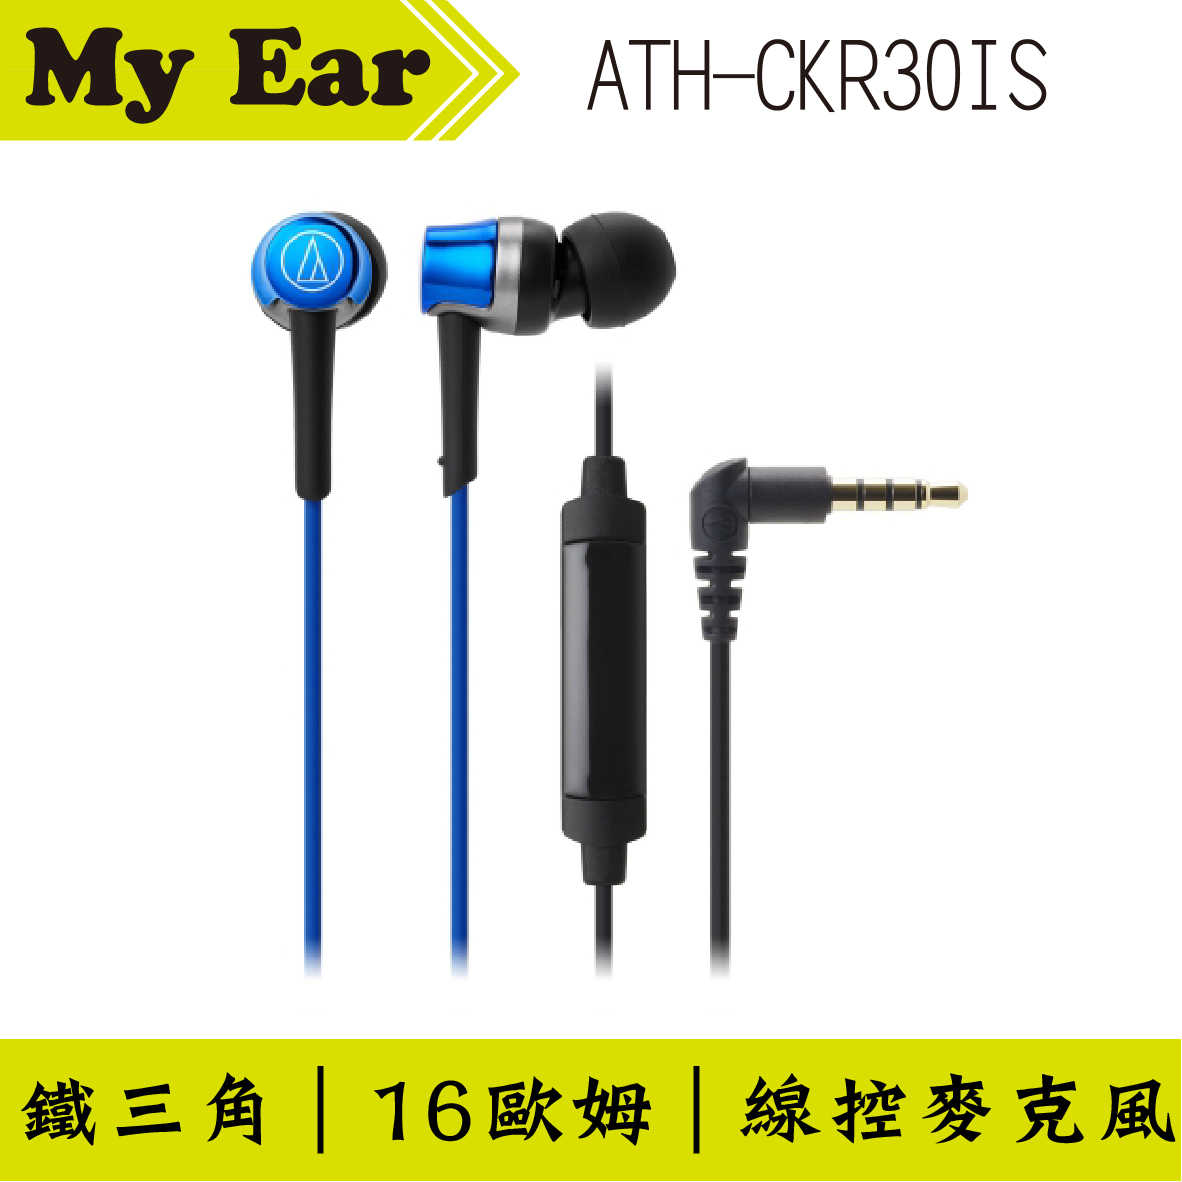 鐵三角 ATH-CKR30is 藍色 線控耳道式耳機 | My Ear 耳機專門店